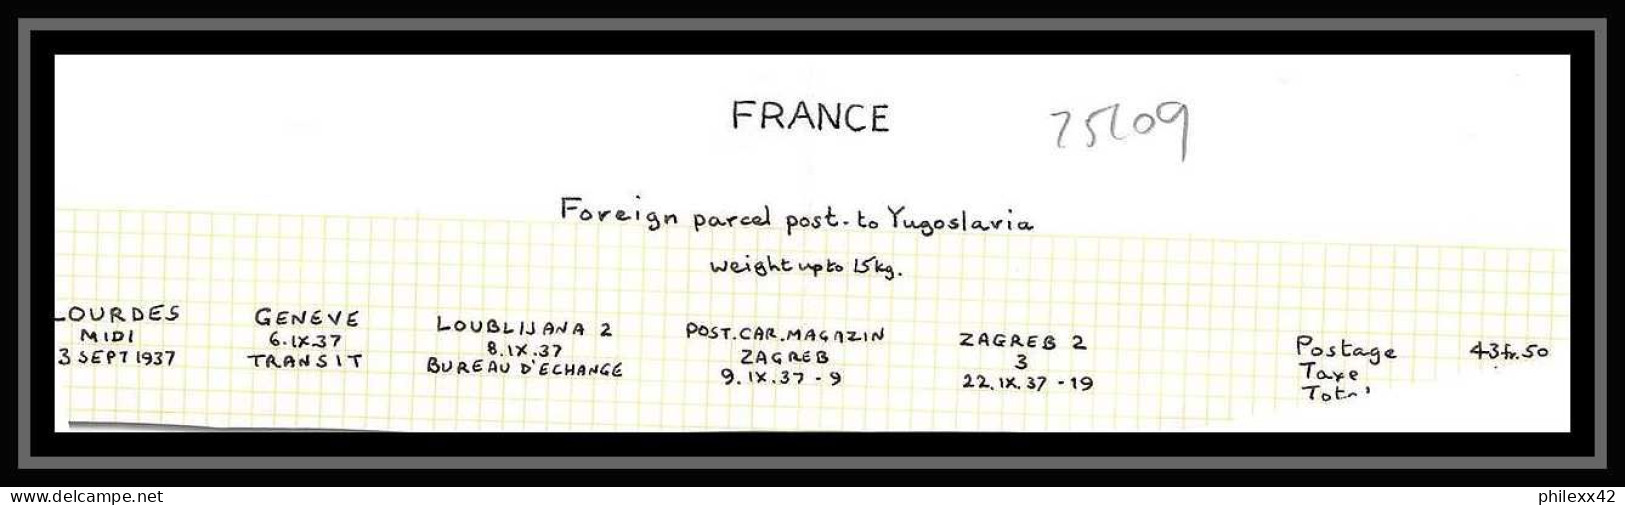 25109 Bulletin D'expédition France Colis Postaux Fiscal Lourdes 3/9/1937 Zagreb Croatie Croatia GENEVE Suisse (Swiss) - Storia Postale